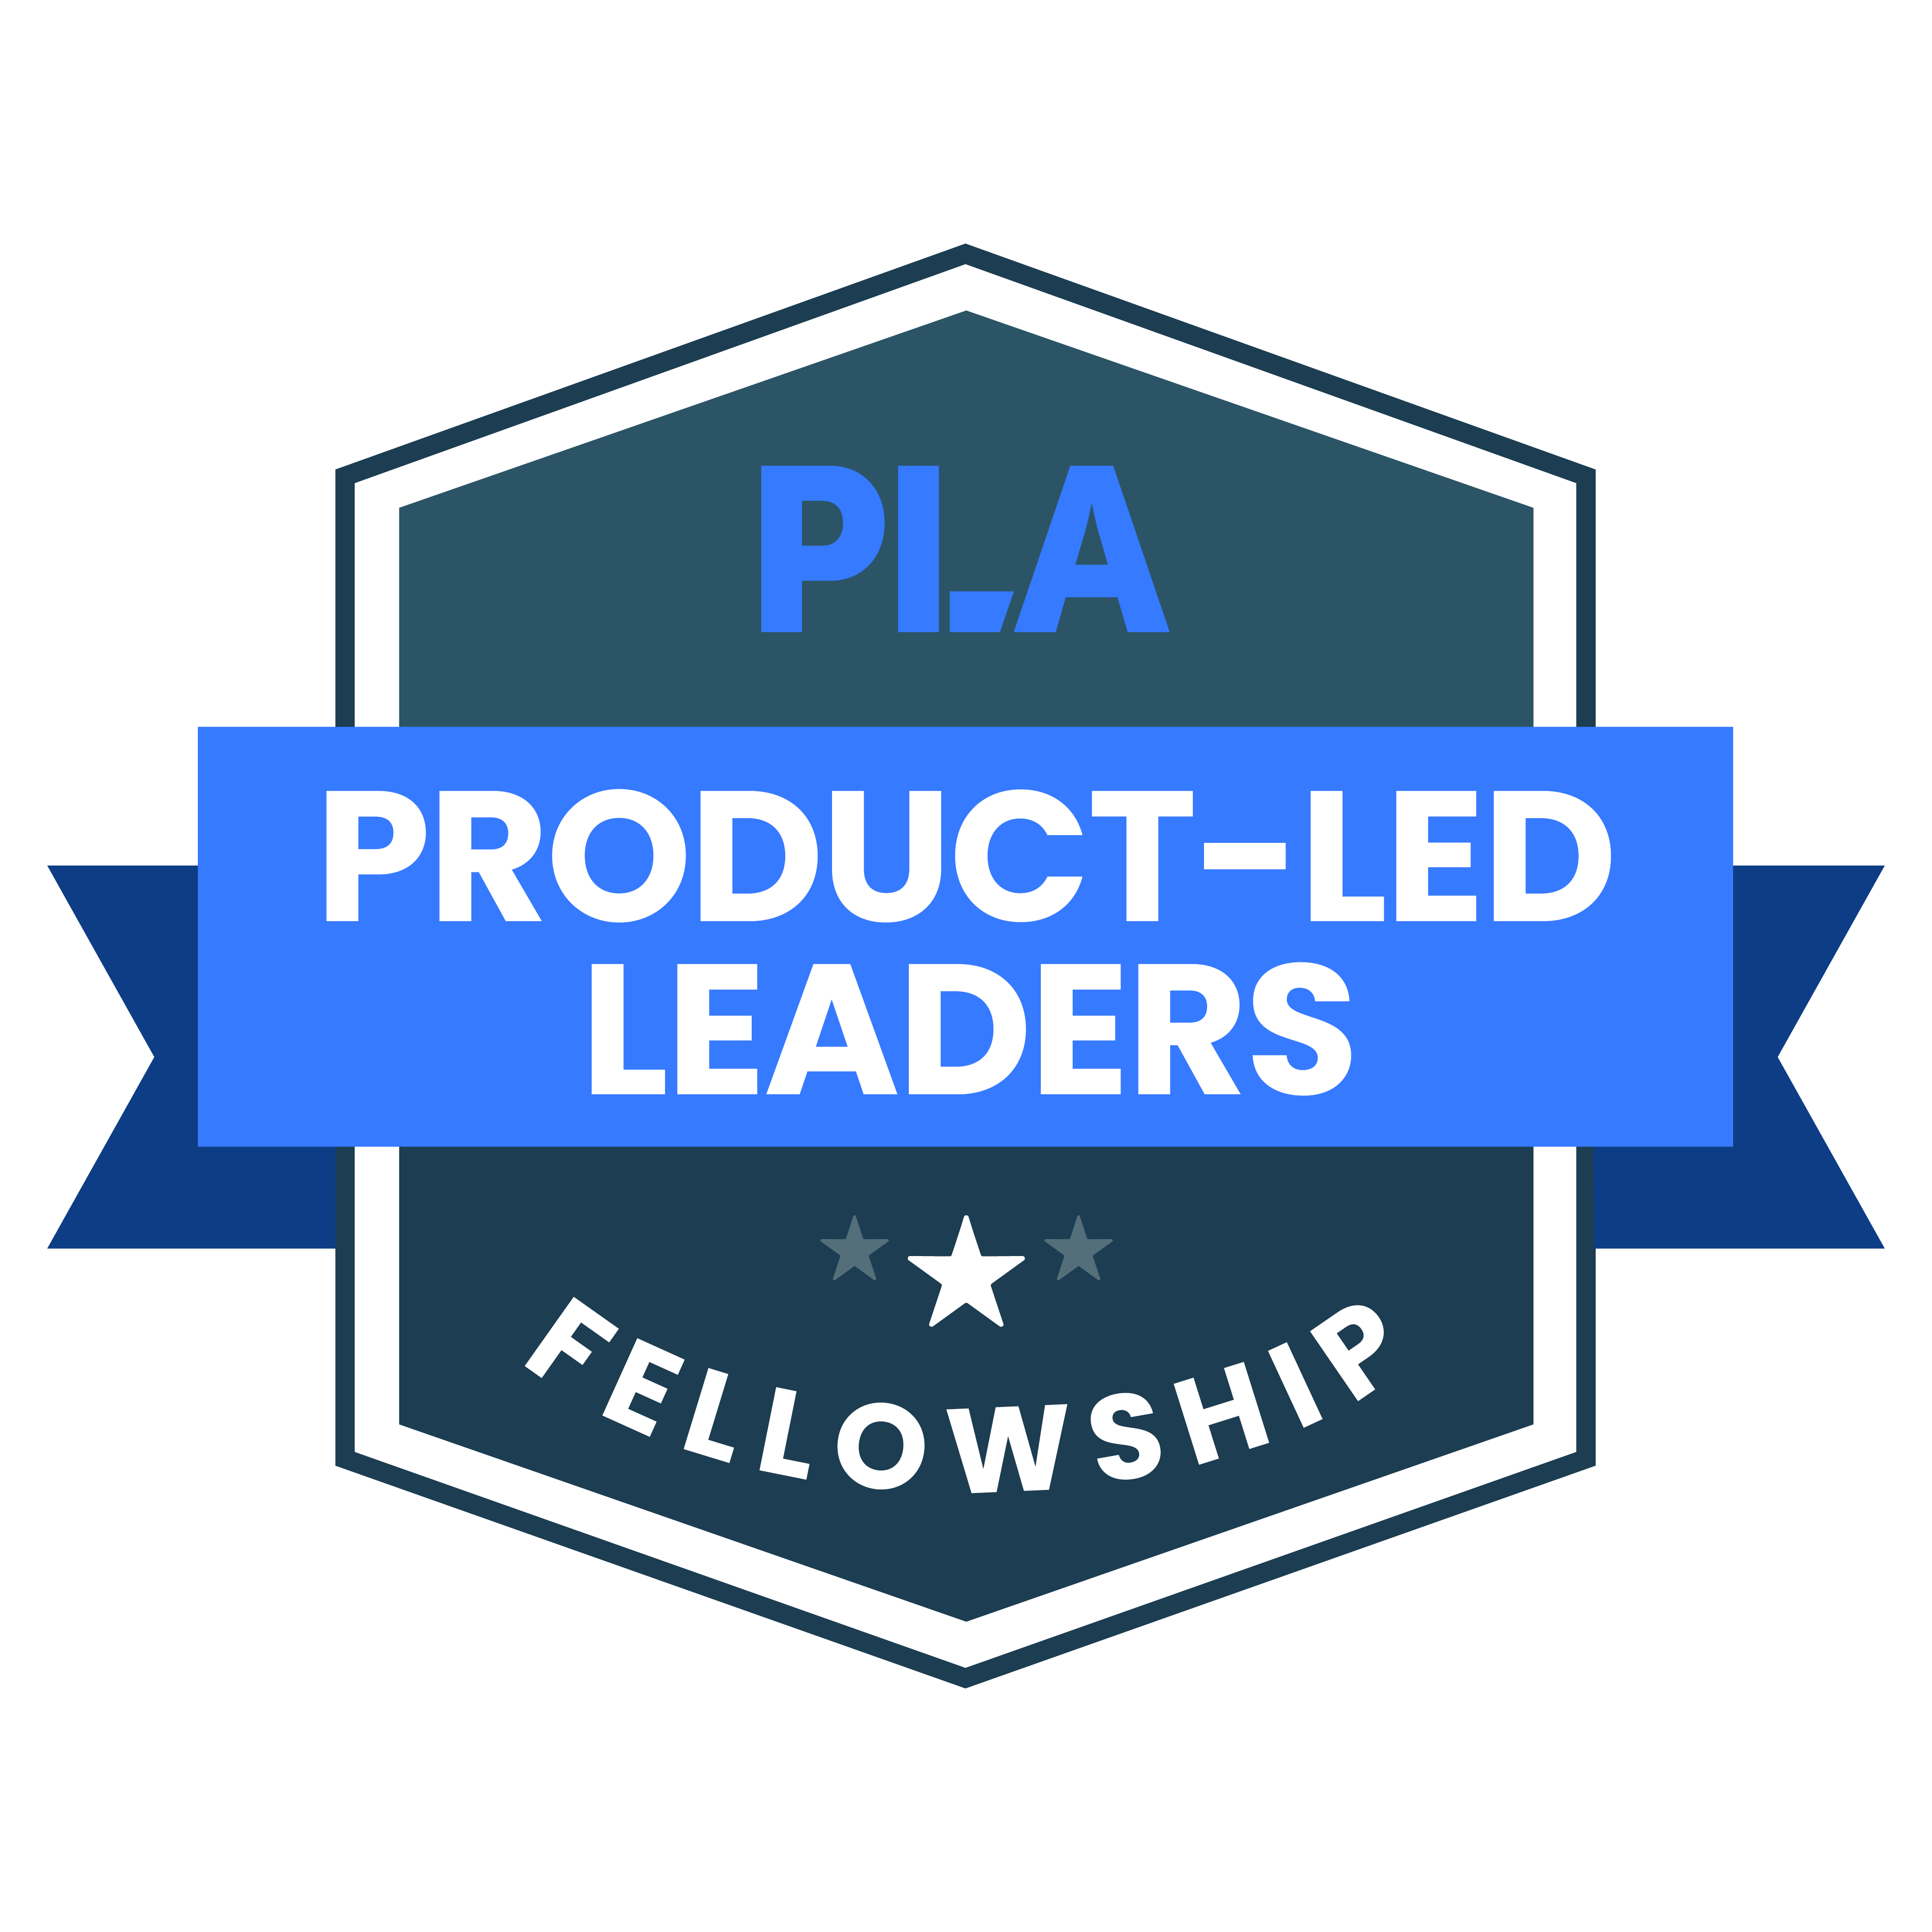 PLA Leaders: Fellowship